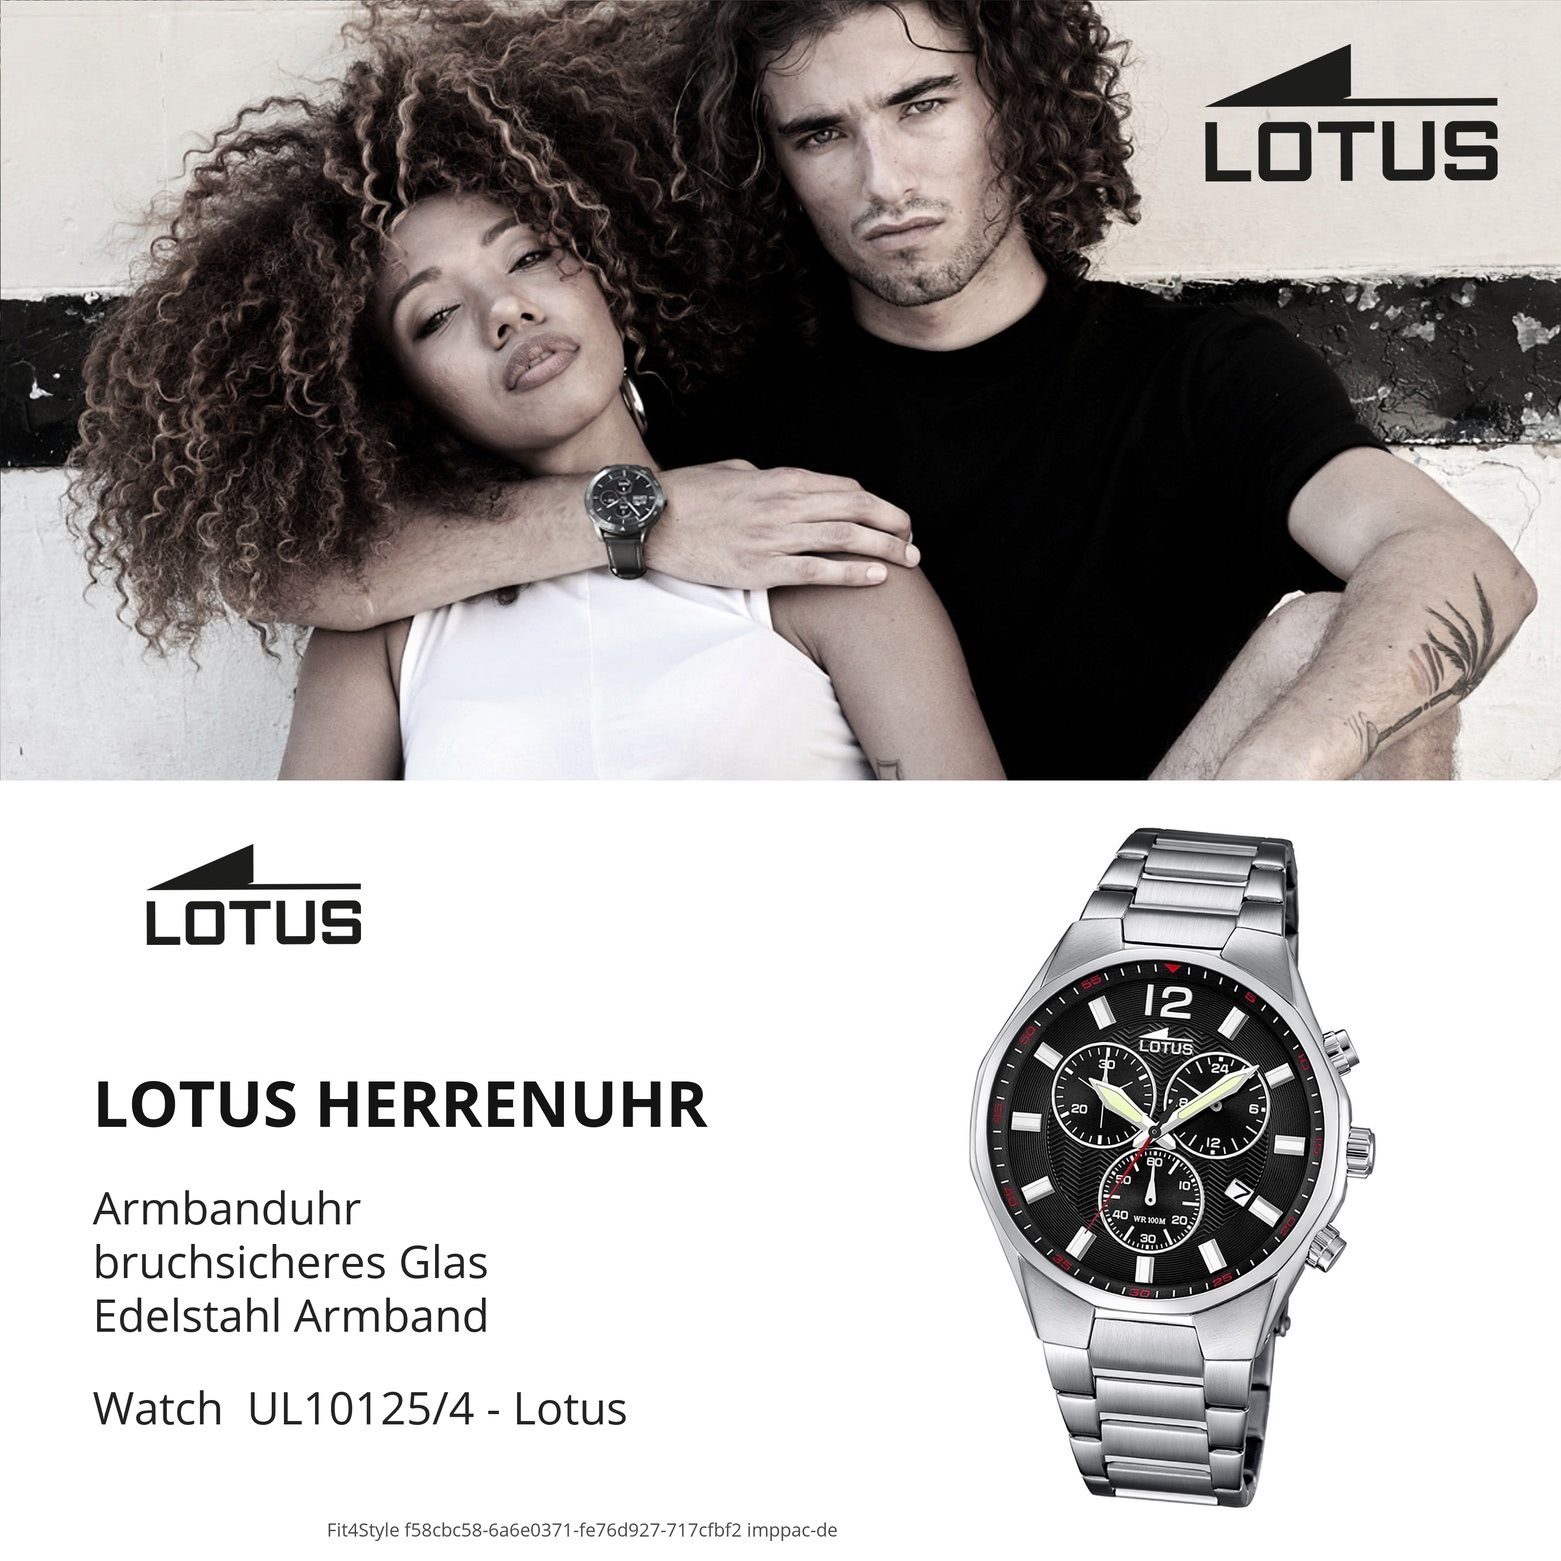 Lotus Chronograph Lotus silber Herren Edelstahlarmband Armbanduhr (ca. 45mm), Elegant Herren Uhr groß L10125/4, rund